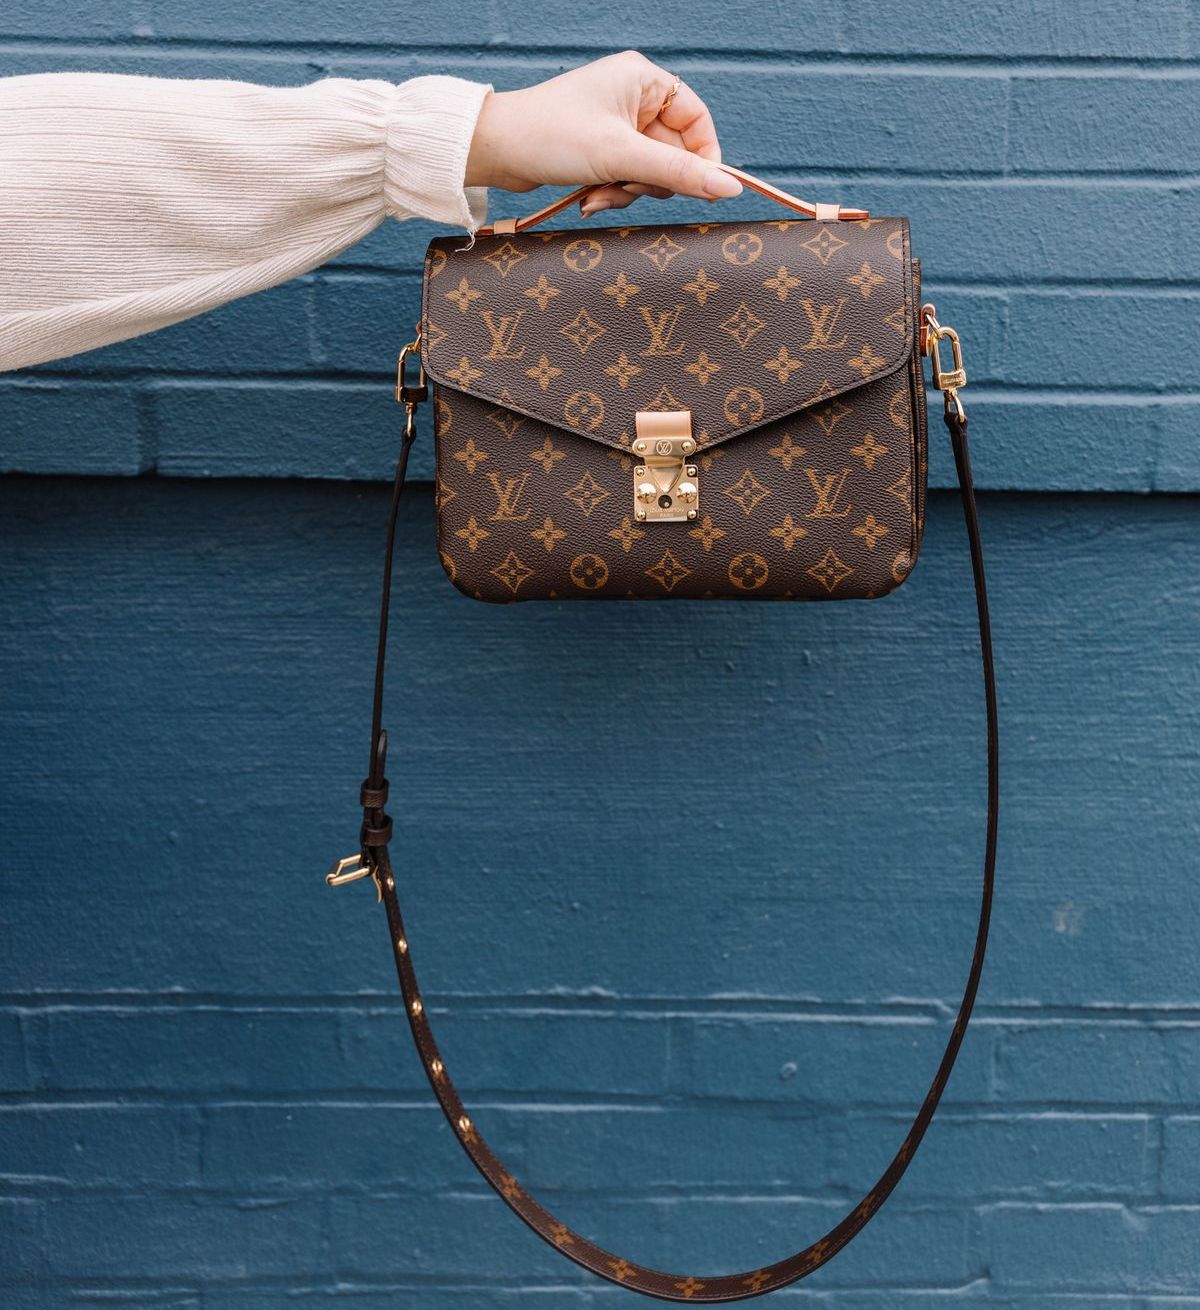 Louis Vuitton Damen Handtaschen